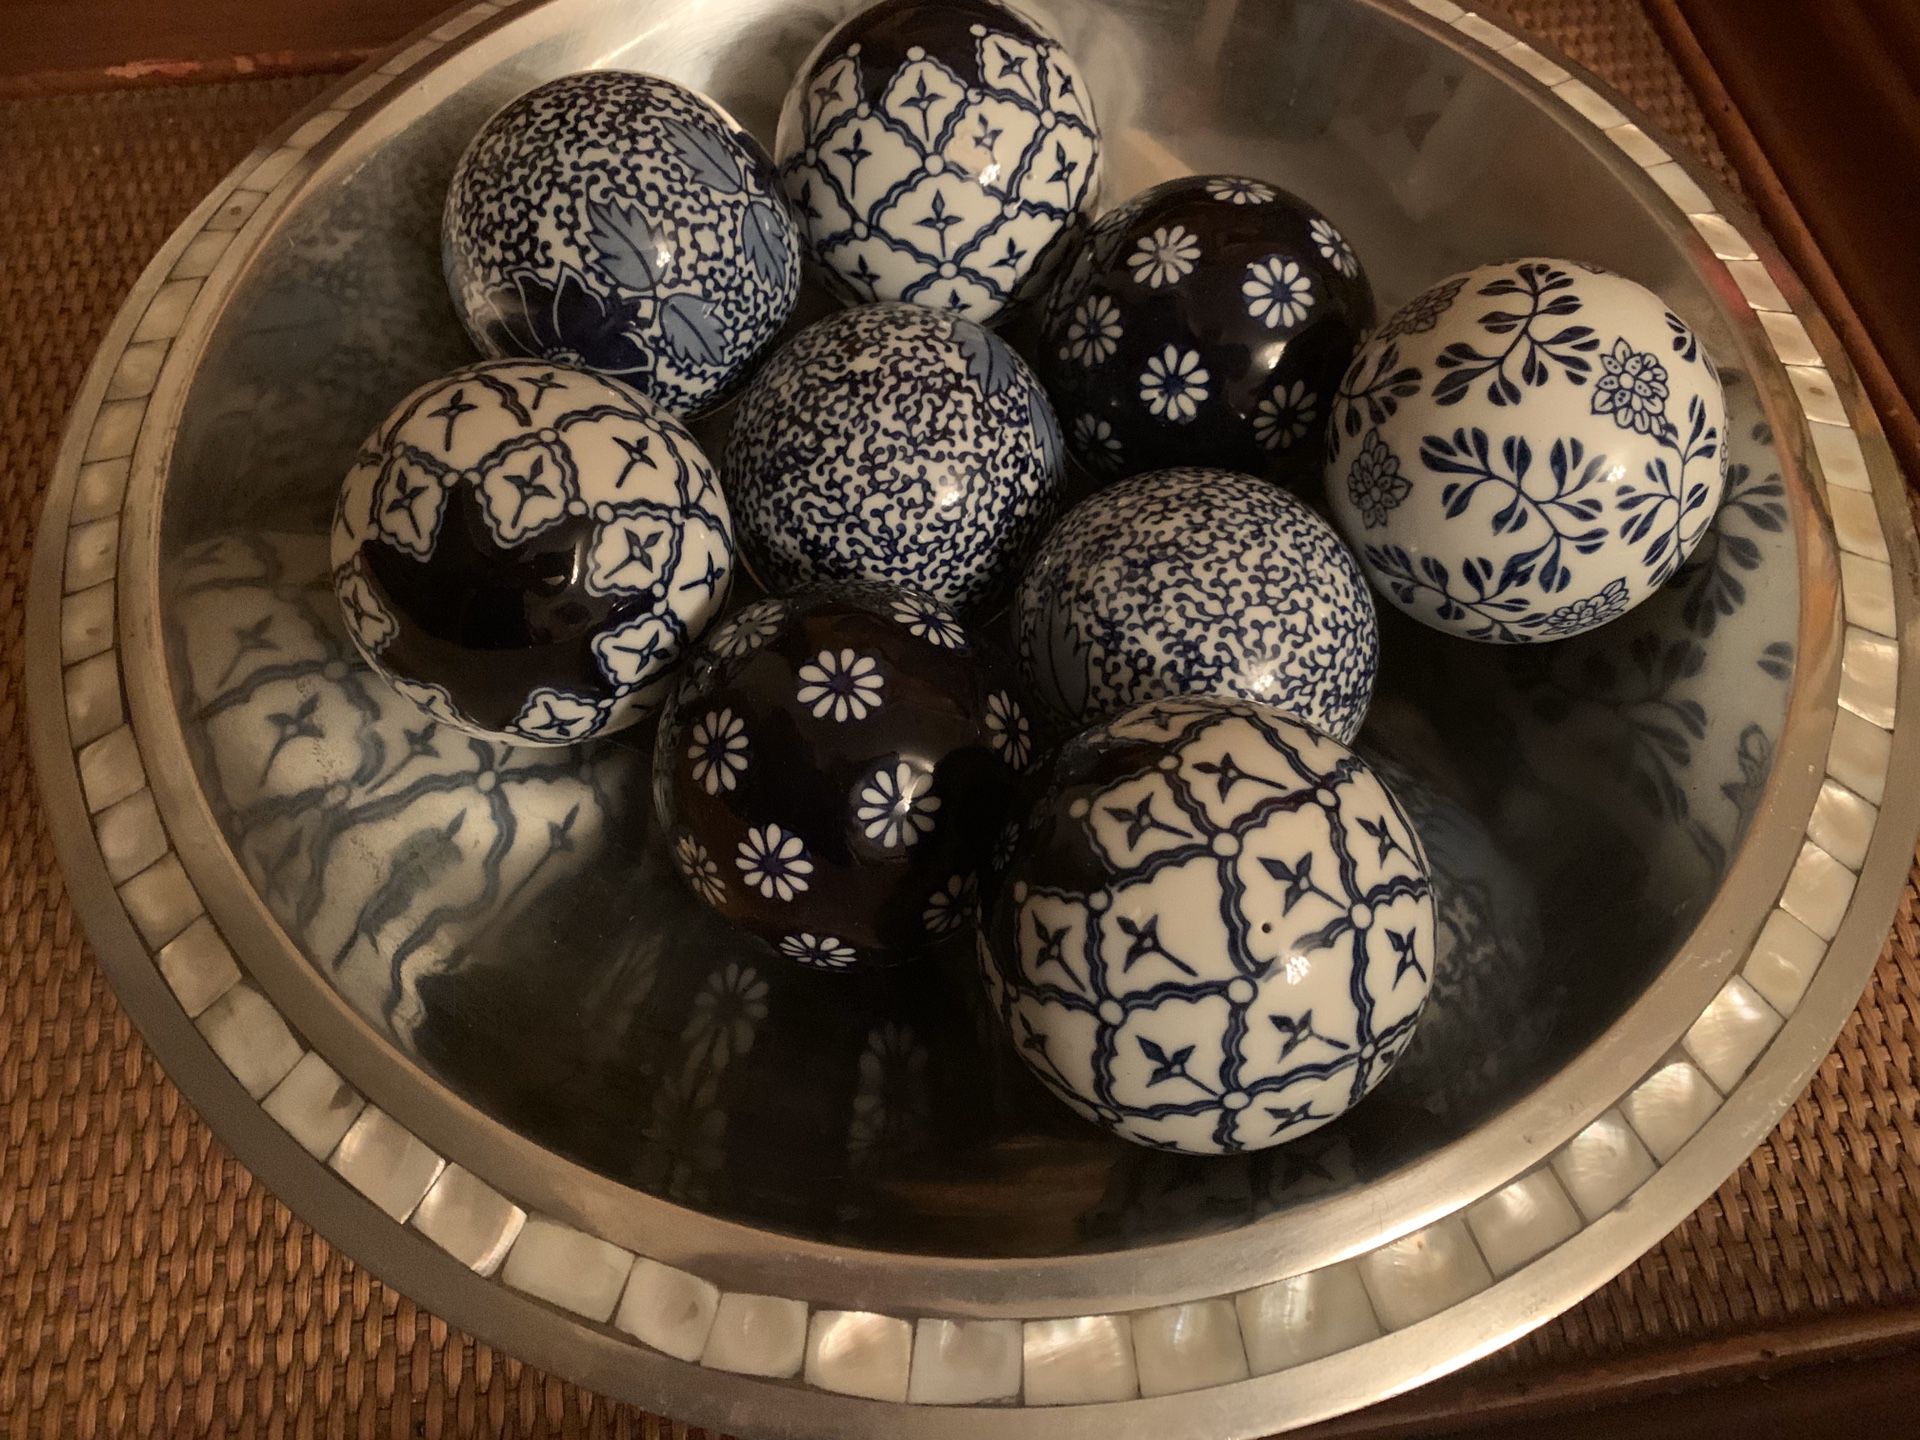 Set of 9 Gorgeous Decorative Porcelain Spheres - decor - bolas decorativas